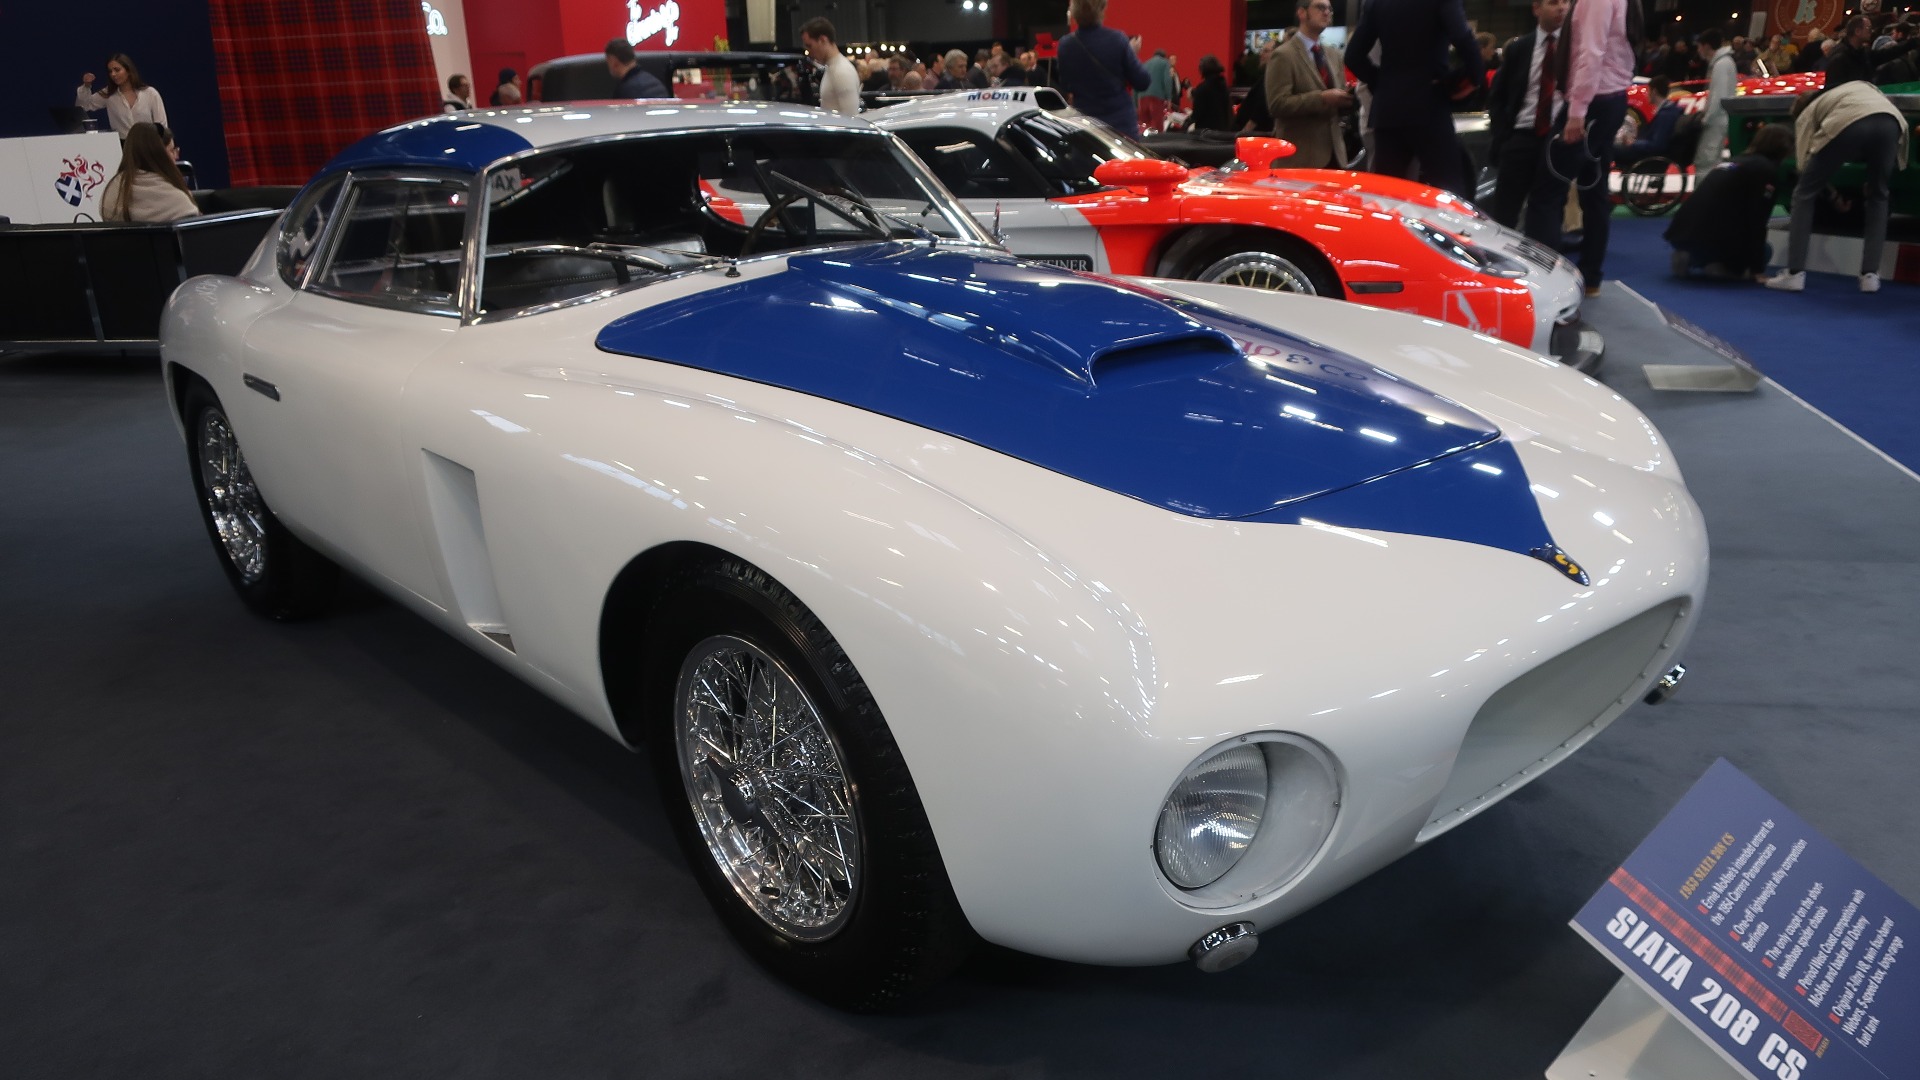 Denne Siata bygd for 1954 Carrera Panamericana var kanskje den tøffeste bilen på messen.